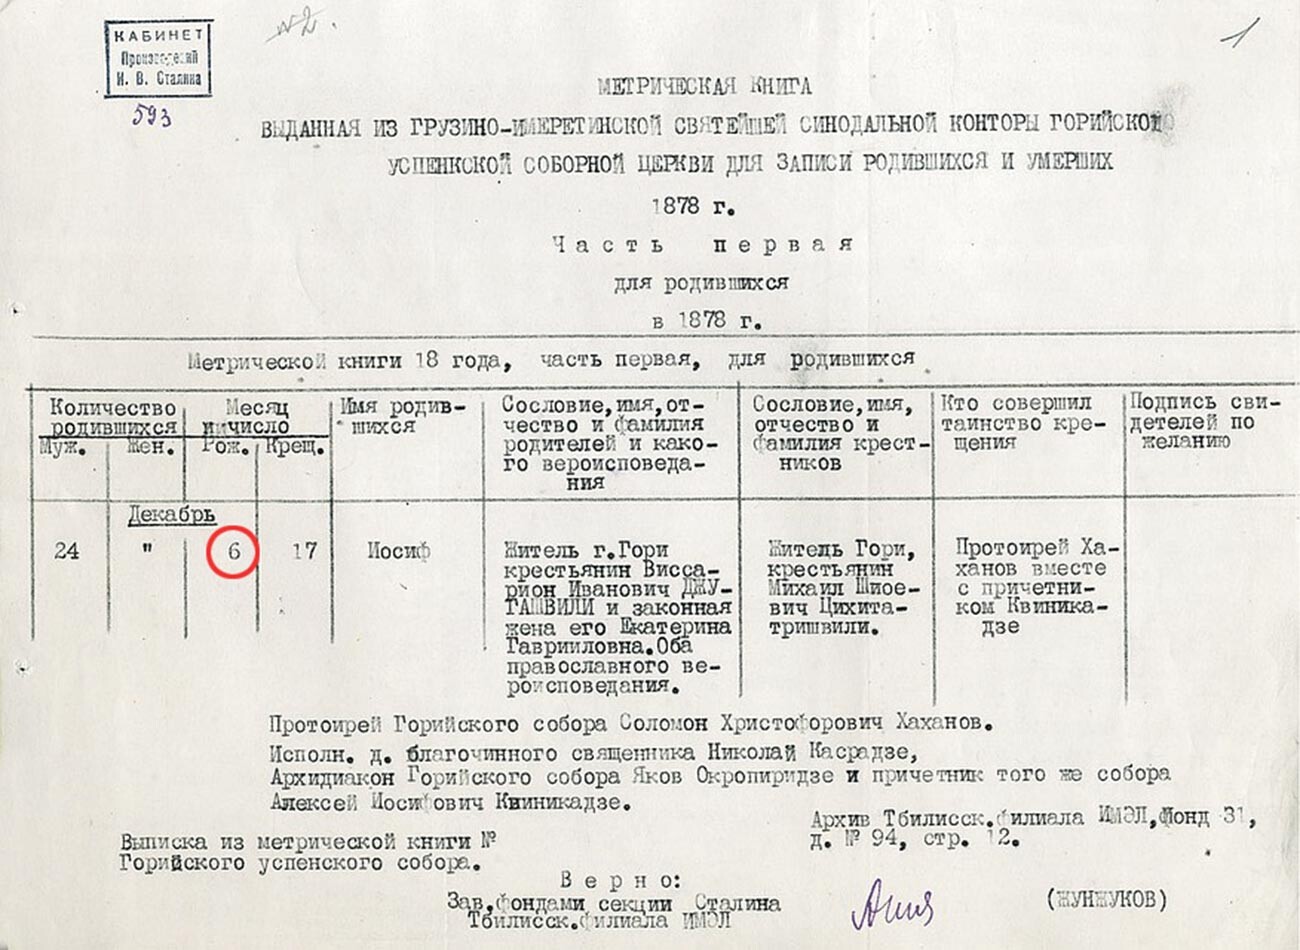 スターリンの生年月日が記載されている戸籍簿